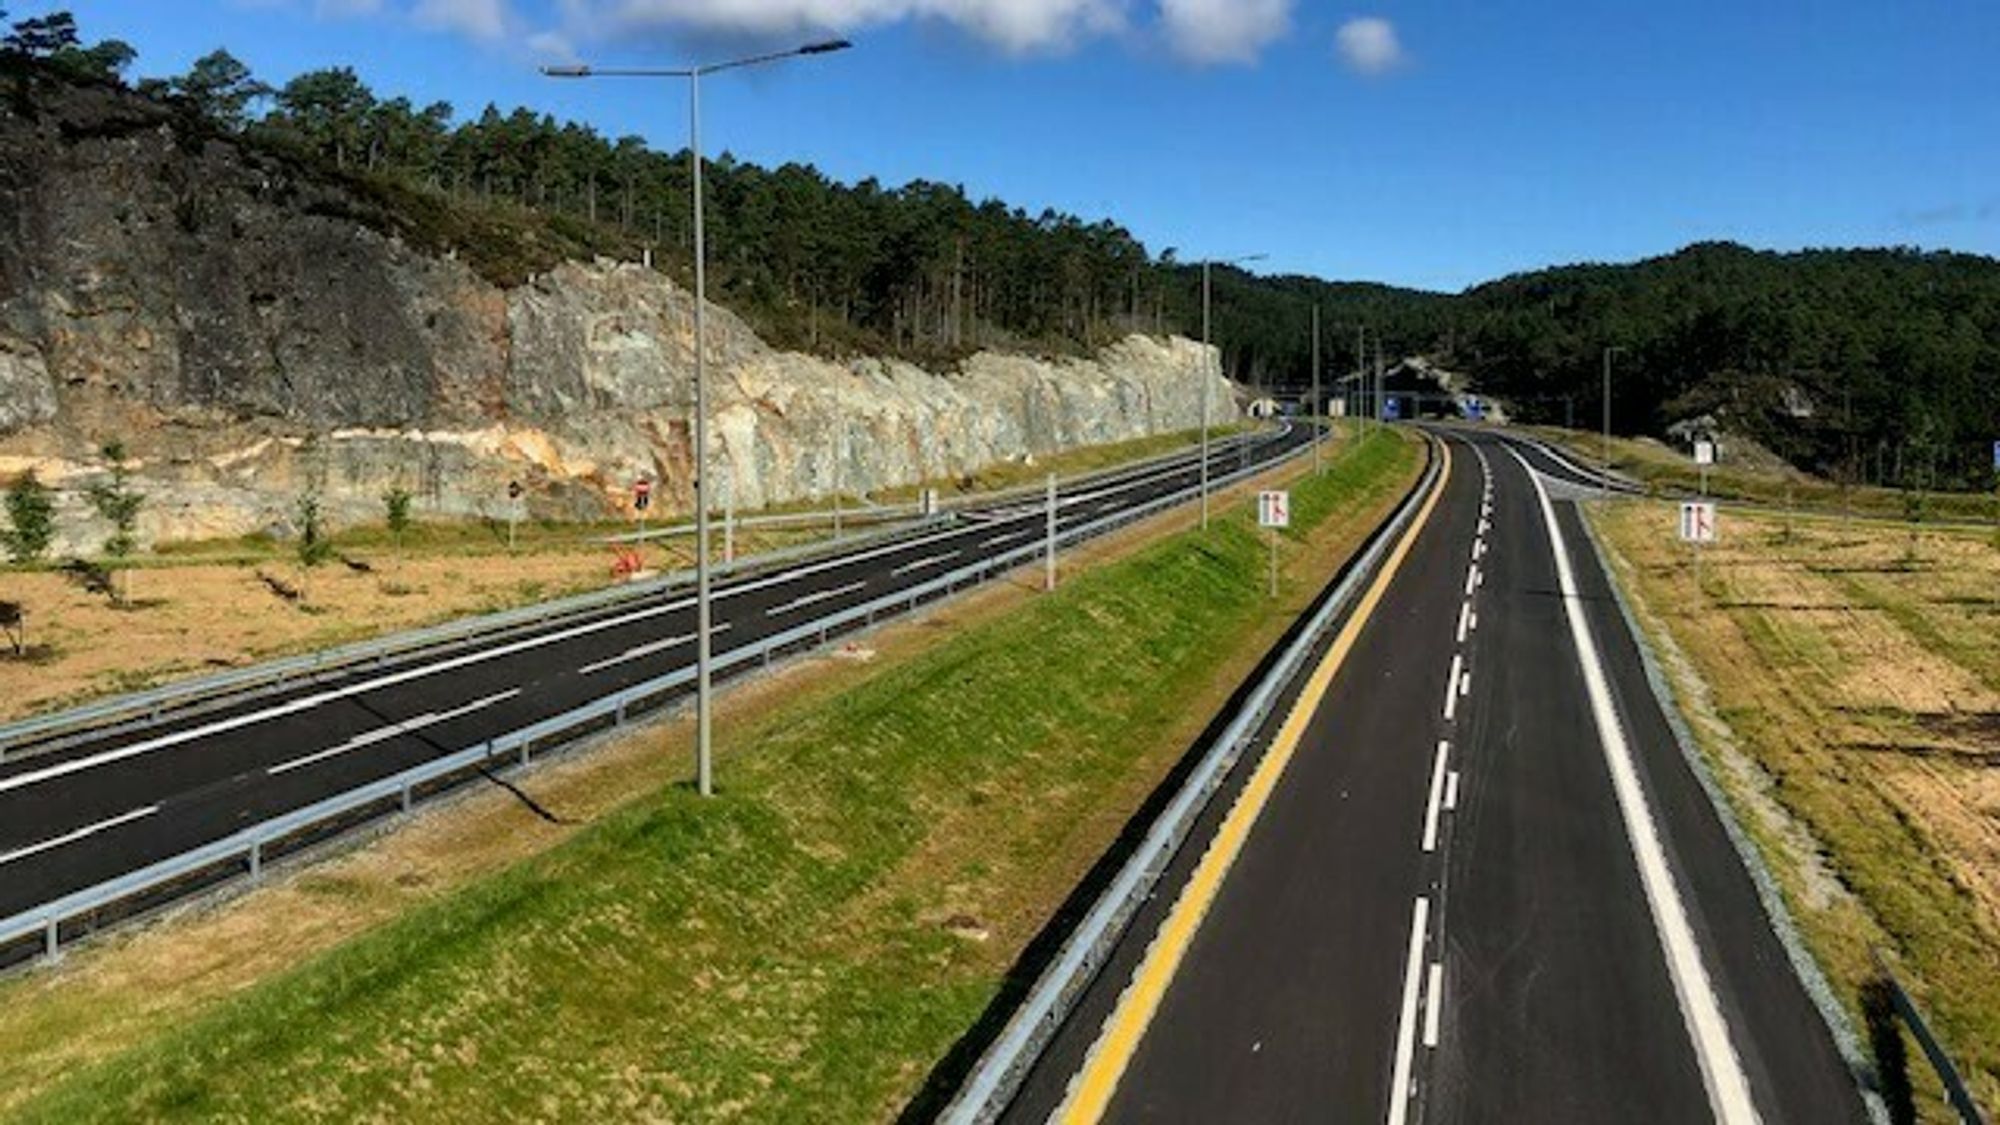 Veien ser ferdig ut, men  det jobbes fremdeles på spreng med elektroarbeidene i tunnelene mellom Bergen og Os.